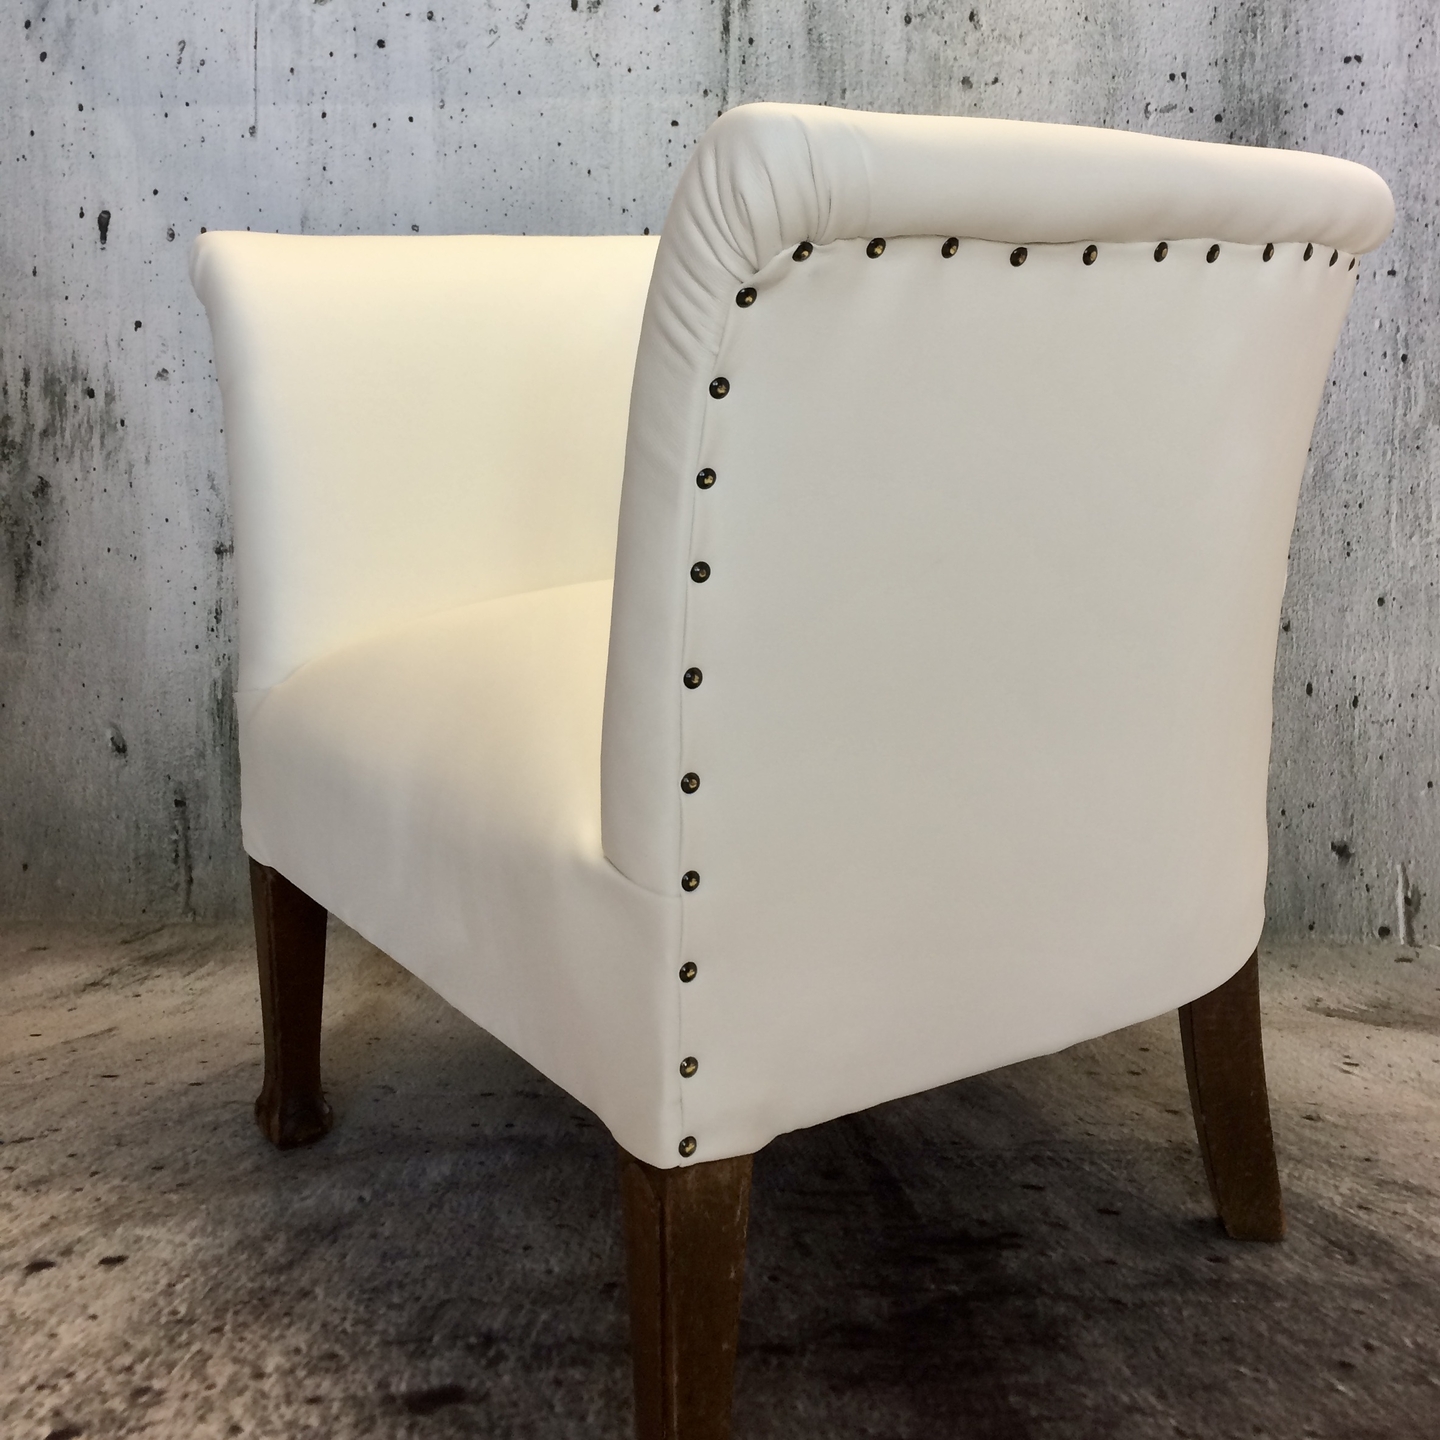 Design fauteuil met skai bekleed Meubelstoffering ManonRuijgrokDesign